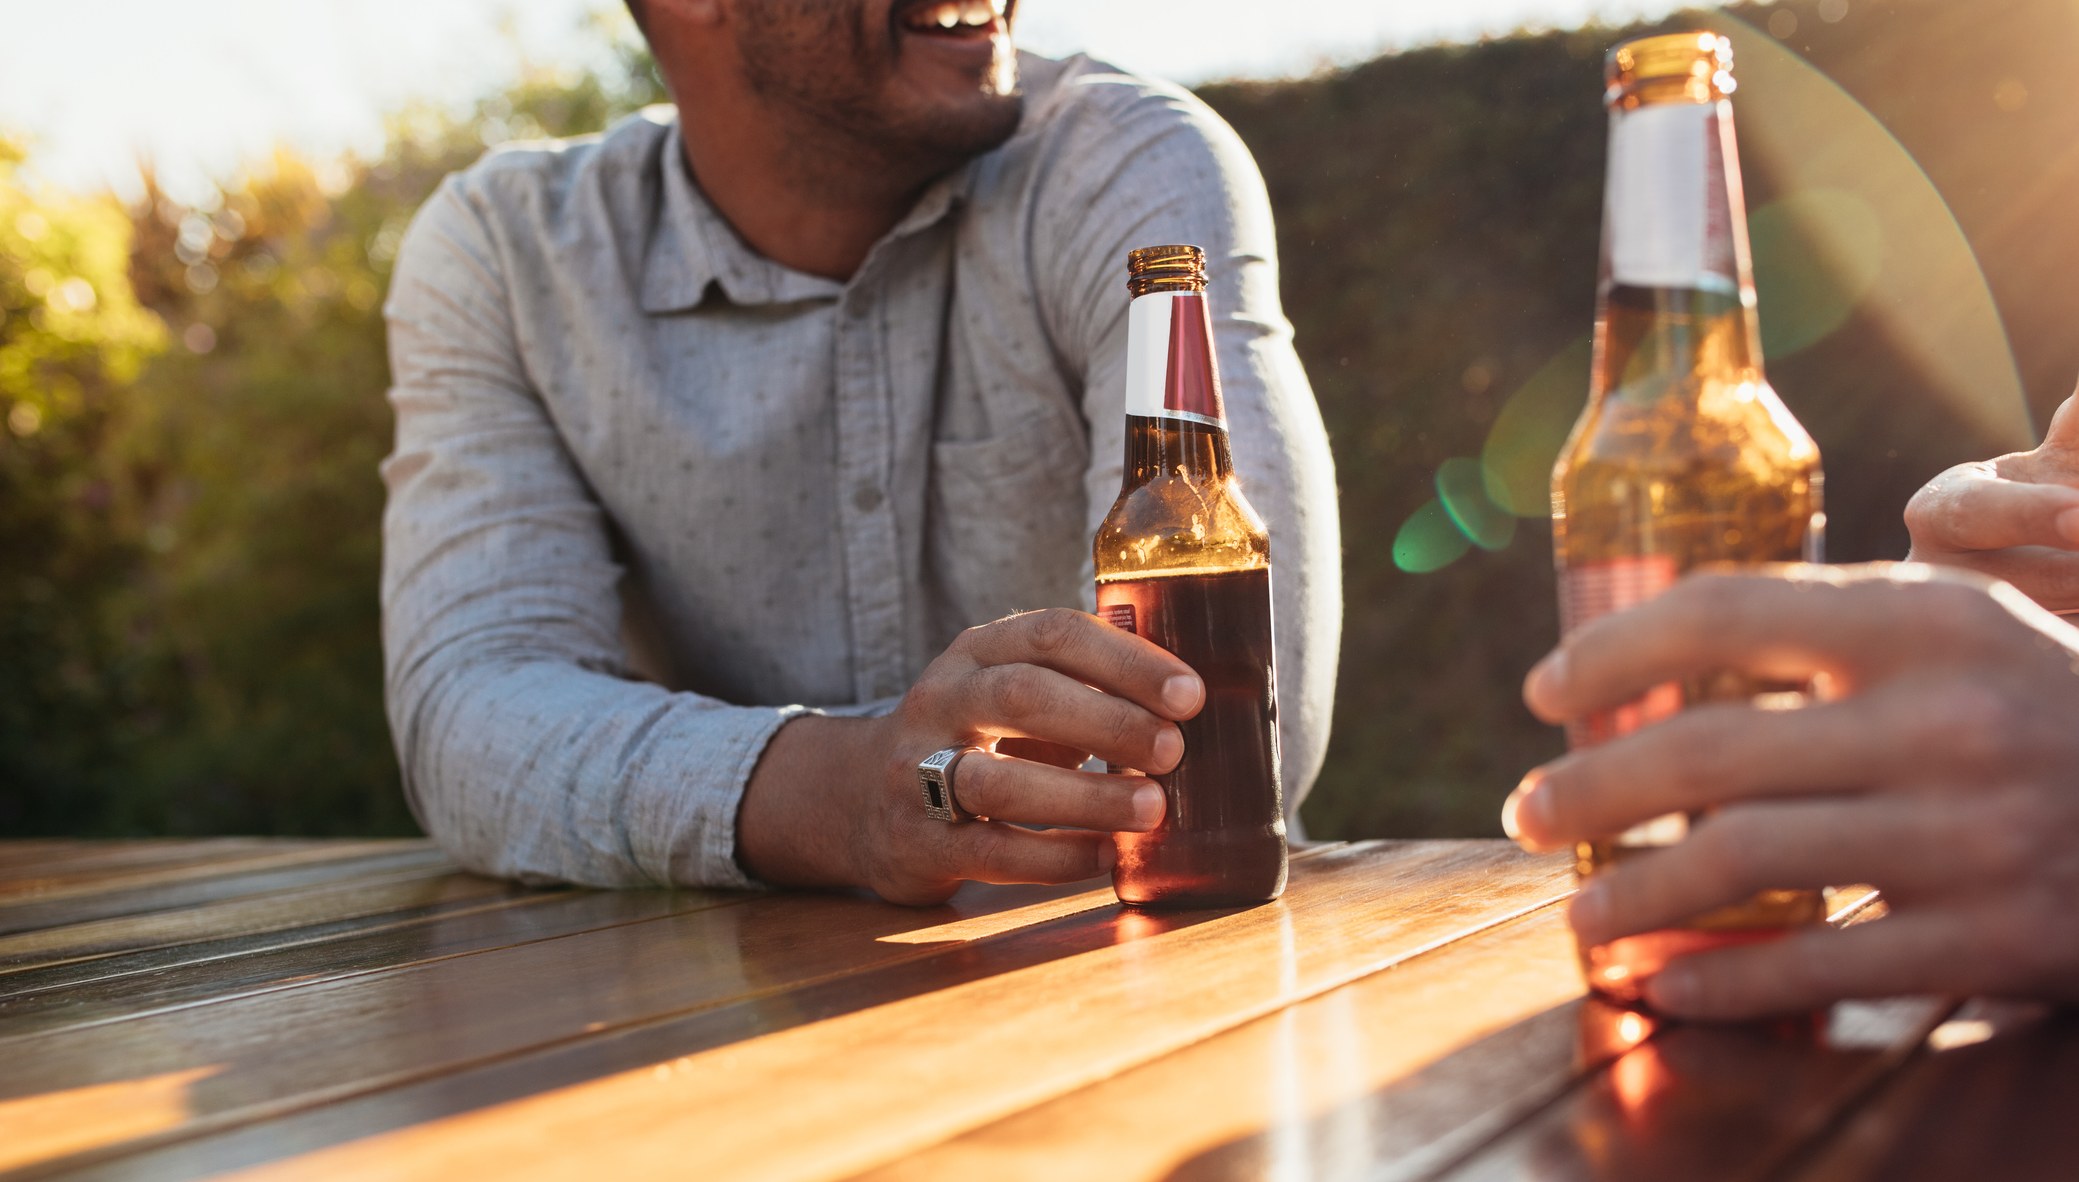 Incompatible responder lente Beber una cerveza al día aporta un importante beneficio, según un estudio  médico | Computer Hoy